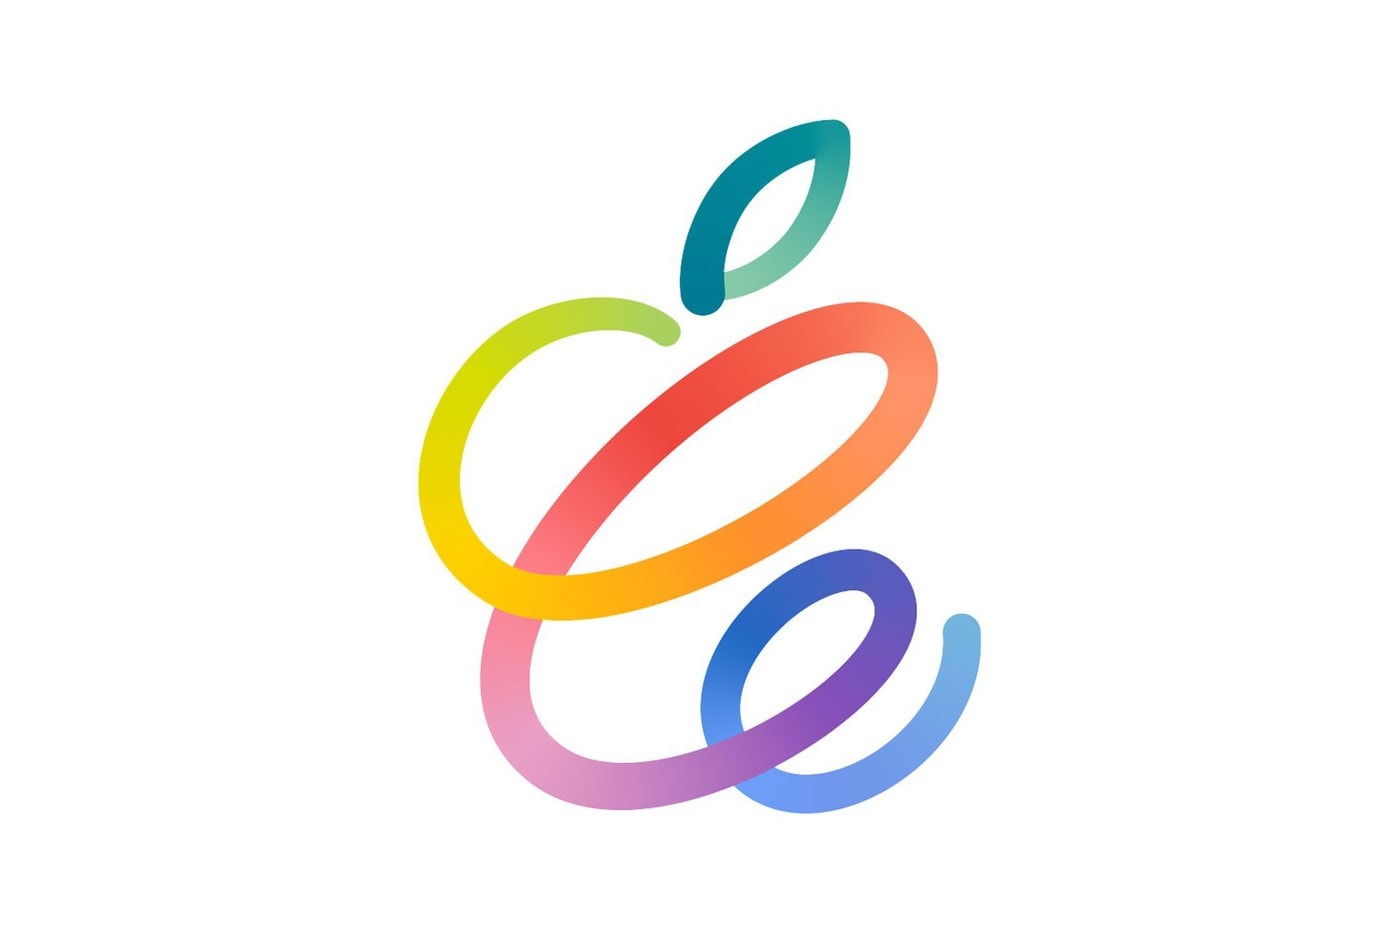 애플, 4월 20일에 신제품 공개 행사 개최한다, 아이패드 프로, 에어태그, 애플펜슬, 아이맥, 맥북, 에어팟